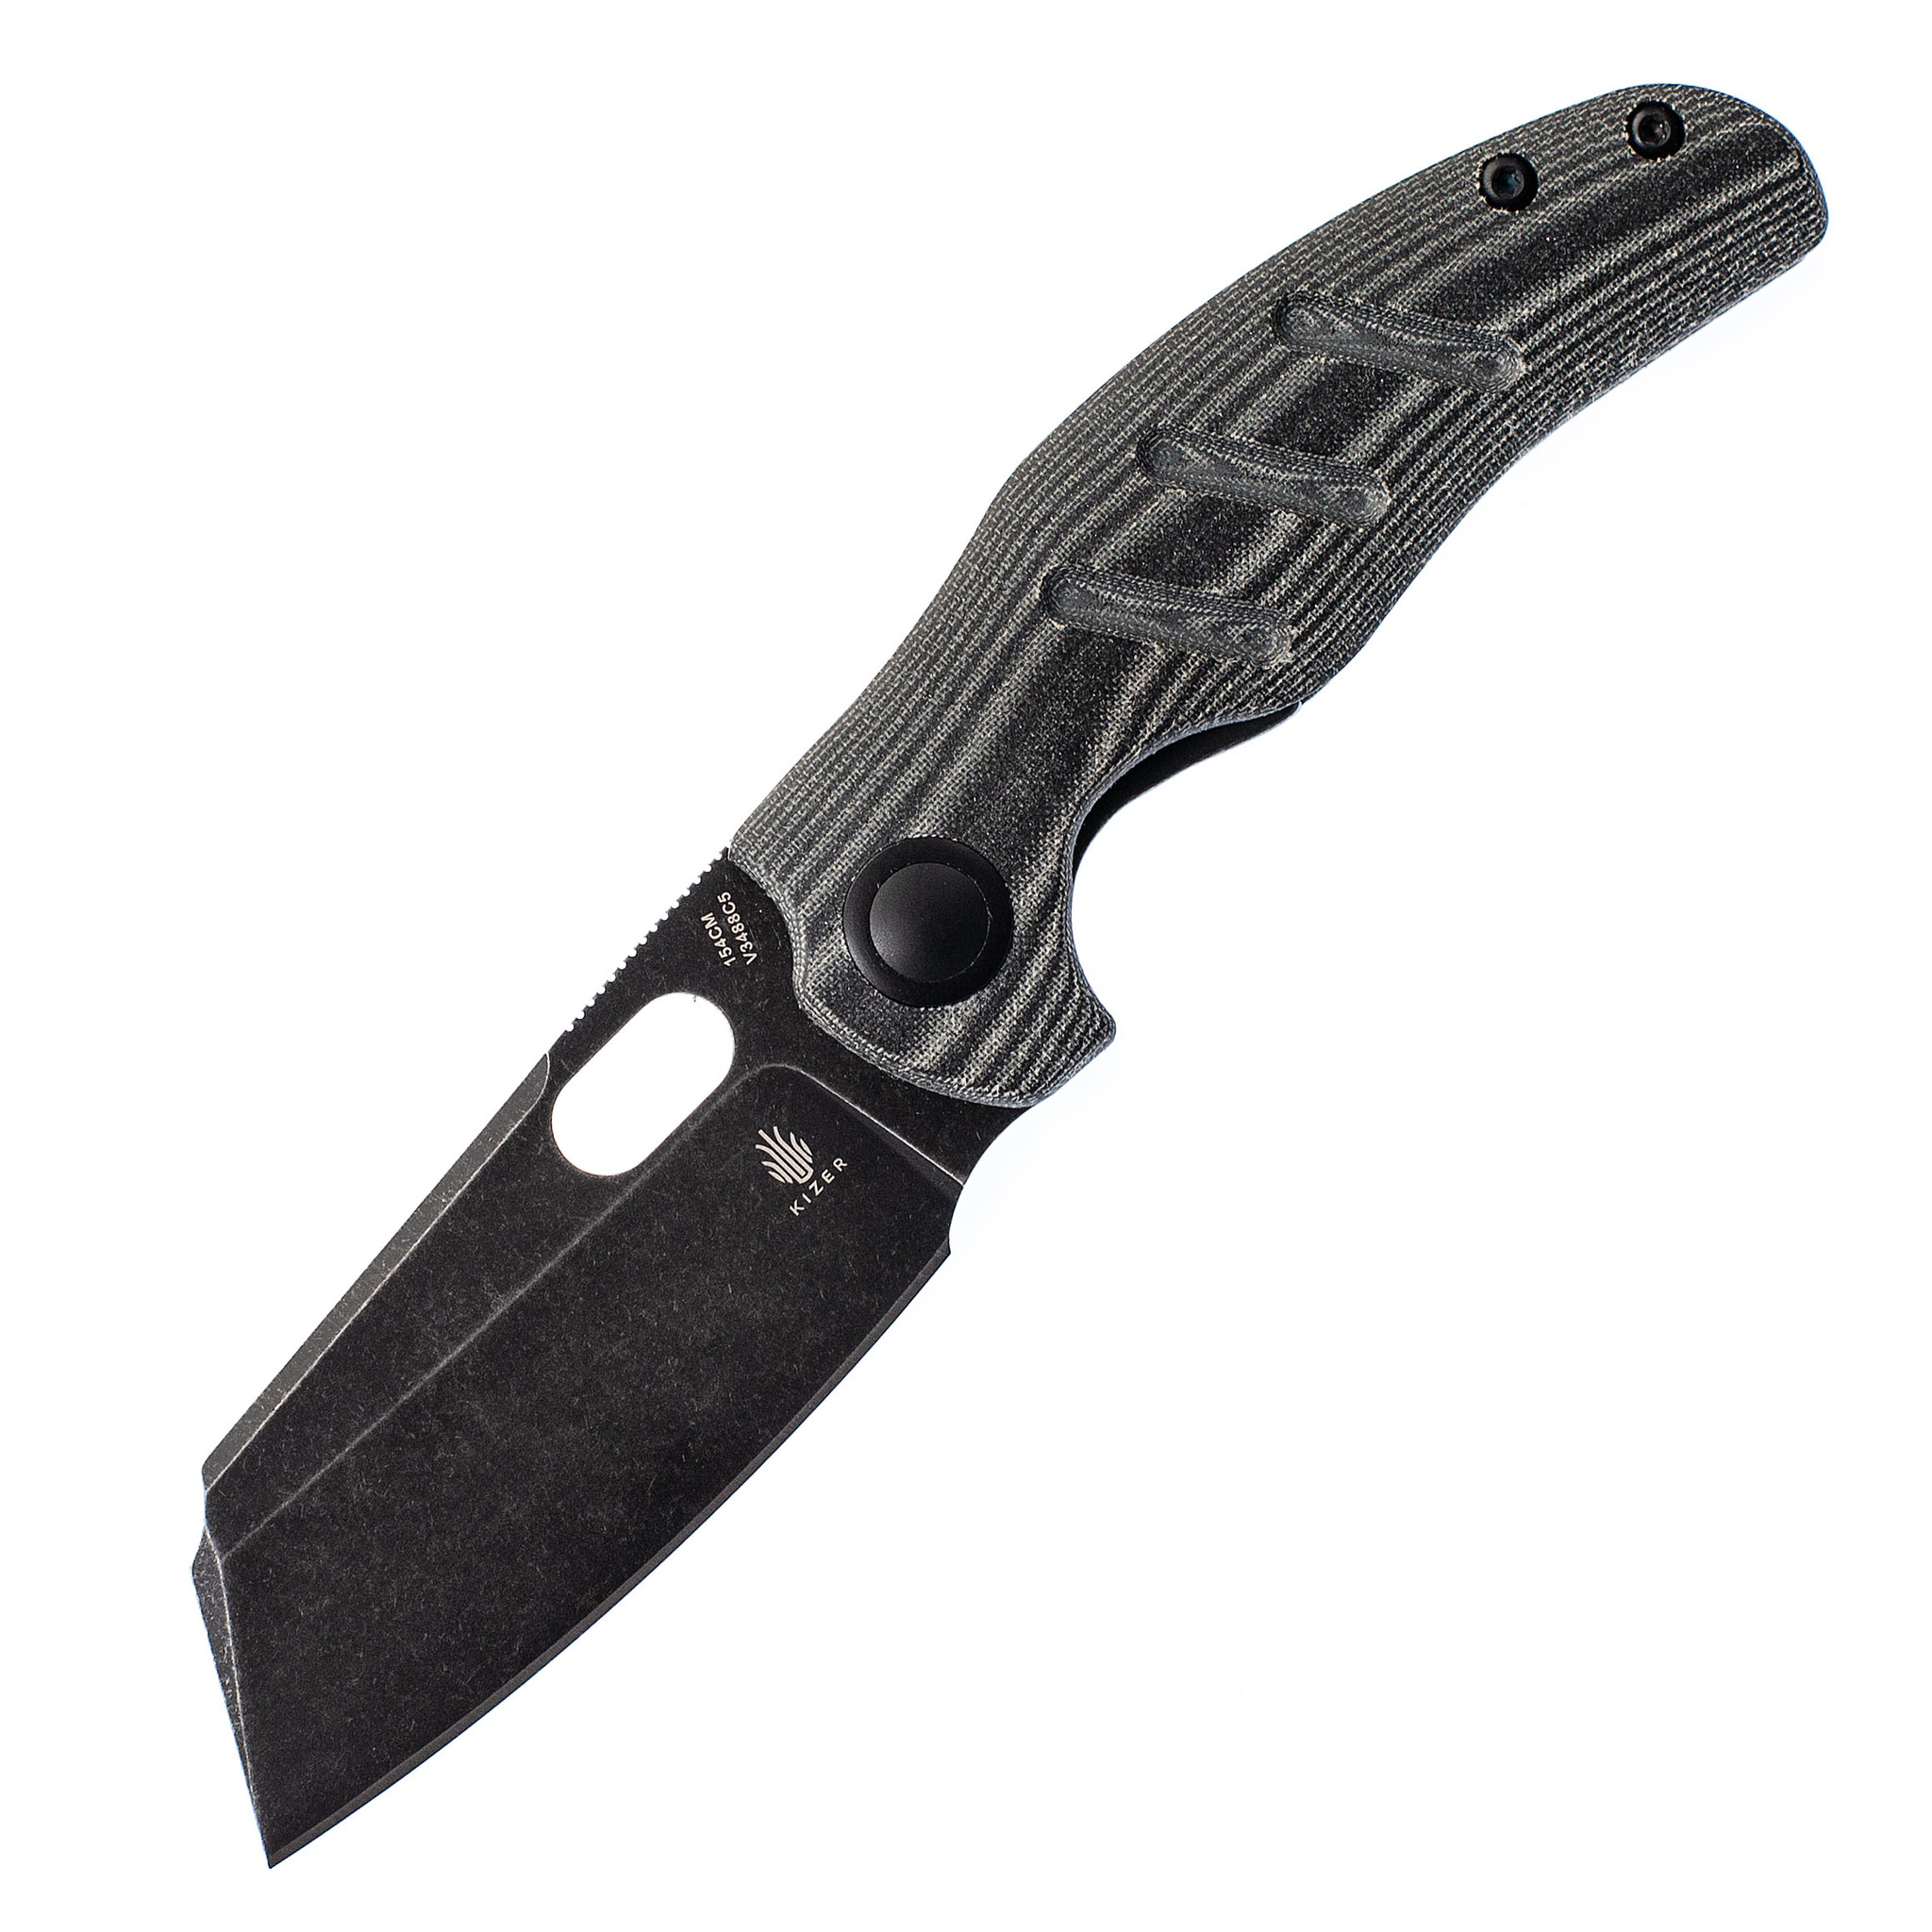 Складной нож Kizer C01C mini Black, сталь 154CM, рукоять микарта набор victorinox swiss classic складной нож для овощей и разделочная доска красная рукоять